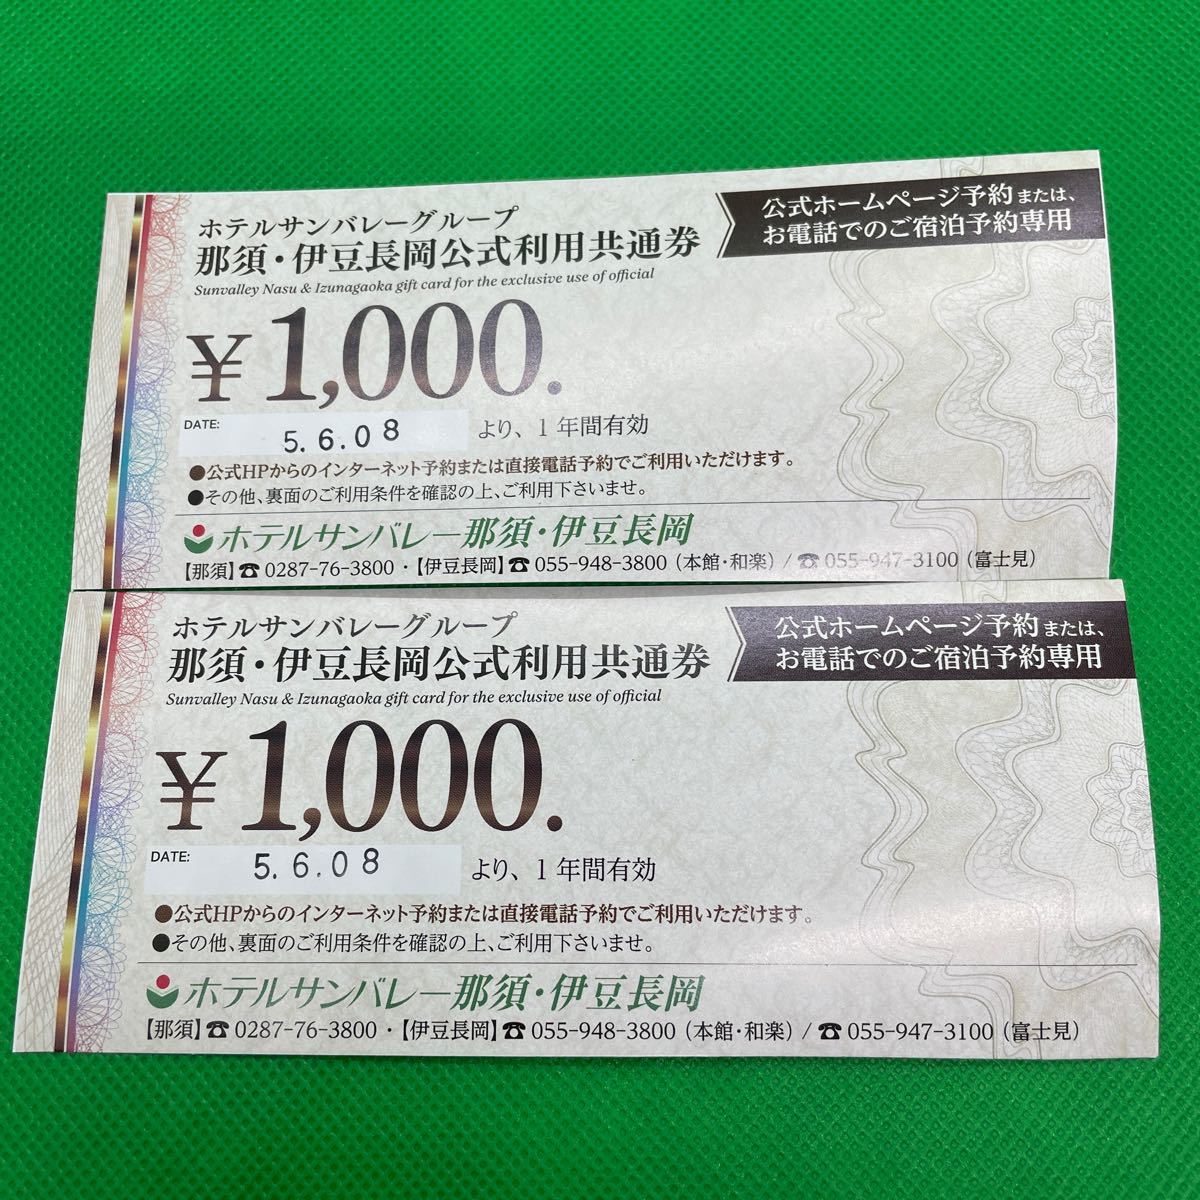 ^ отель sunvalley группа #../. бобы Nagaoka официальный использование общий талон #1000 иен ×2 листов # комплект / совместно #. мир 6 год 6 месяц 8 до дня действительный # пригласительный билет / льготный билет ^